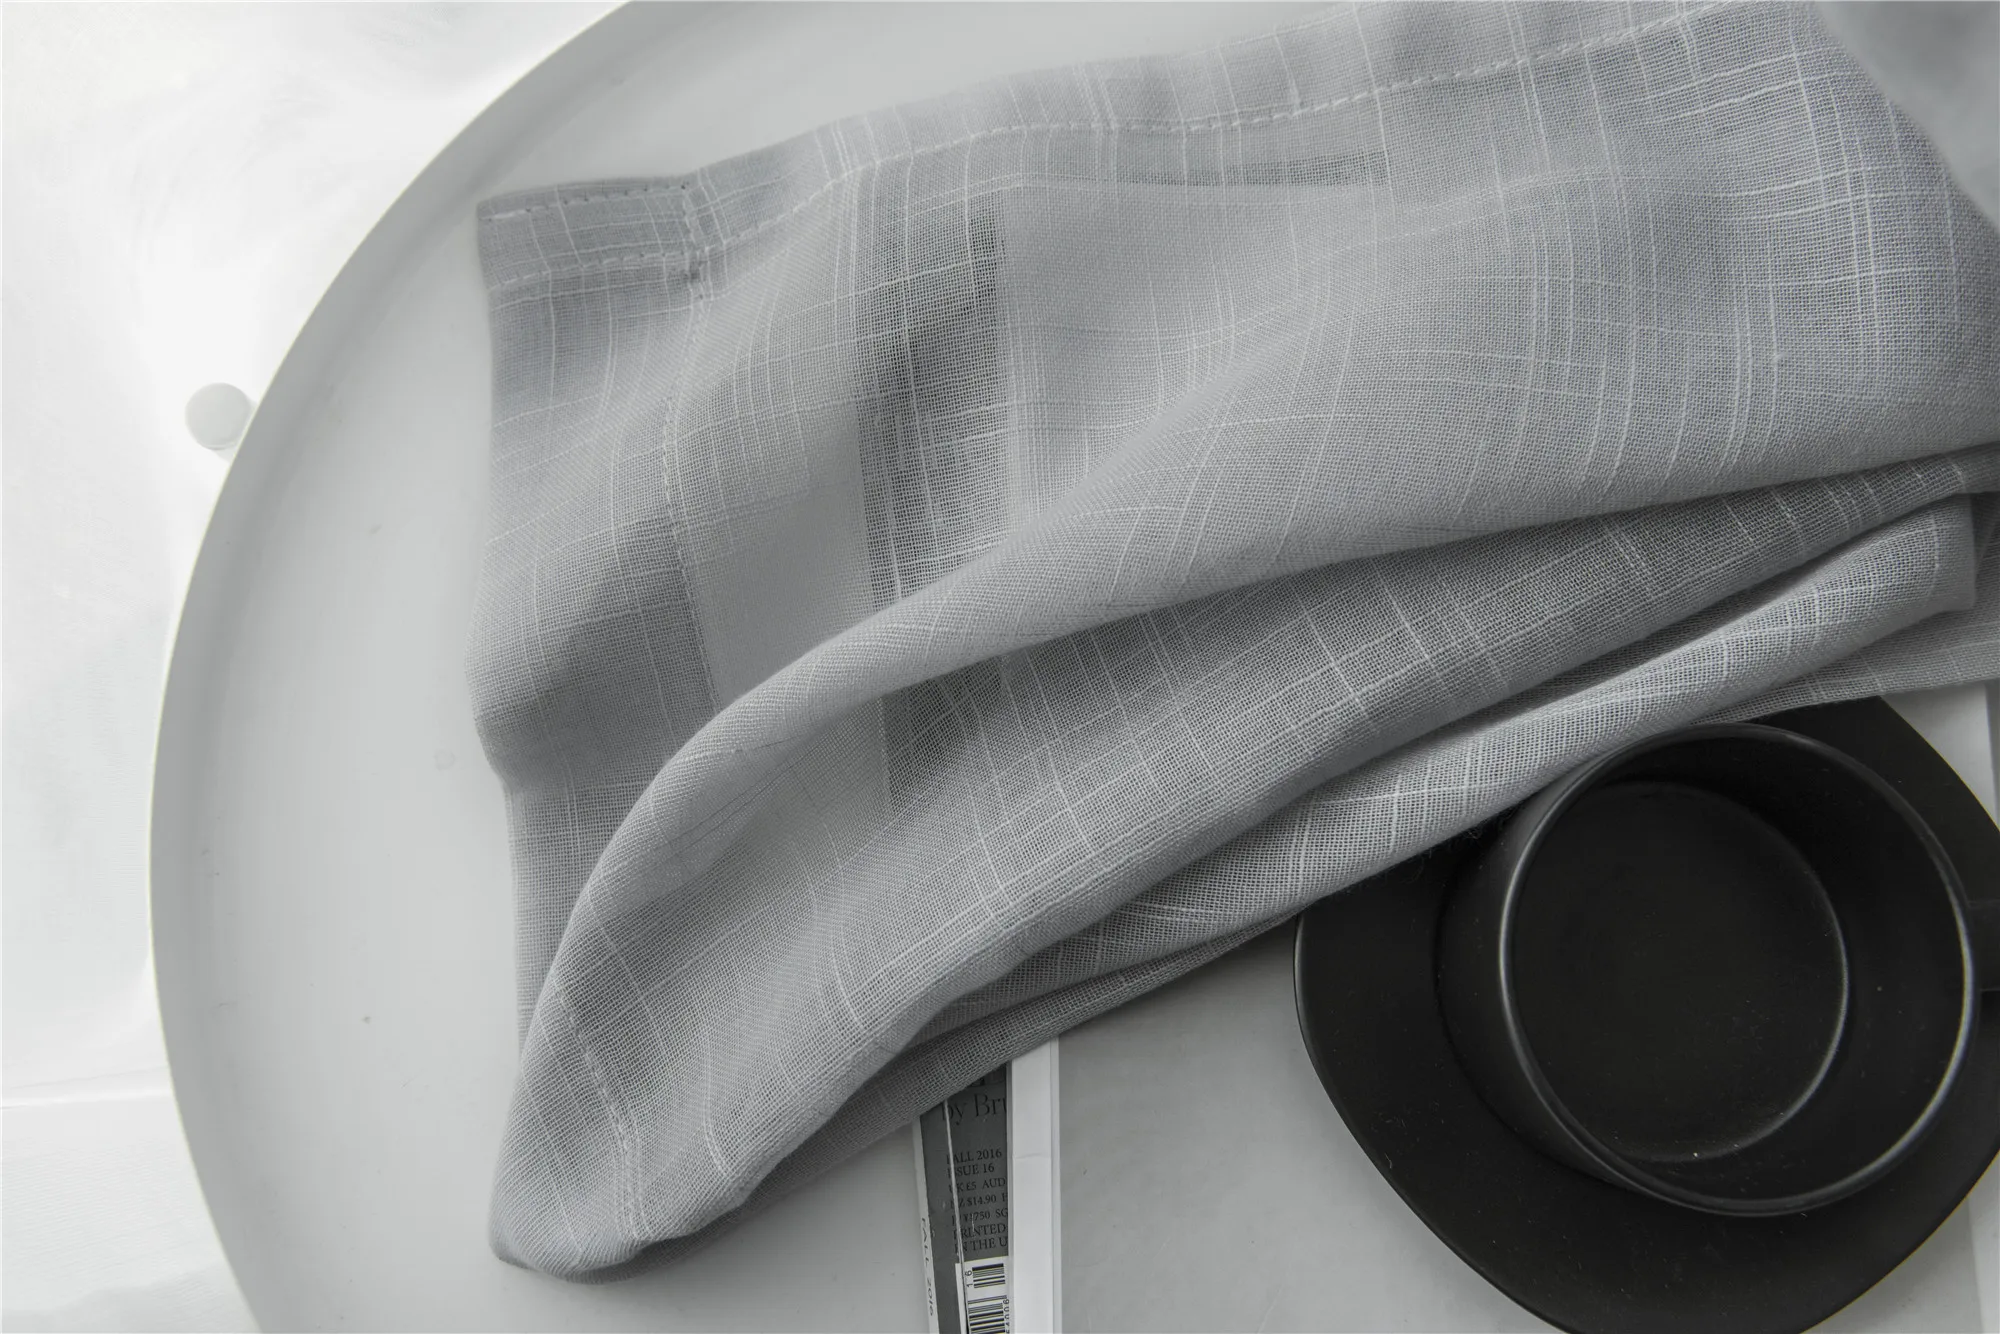 Серый хлопок лен Тюль занавески декоративные современные белые прозрачные cortina para janela de quarto шторы для спальни s053#4